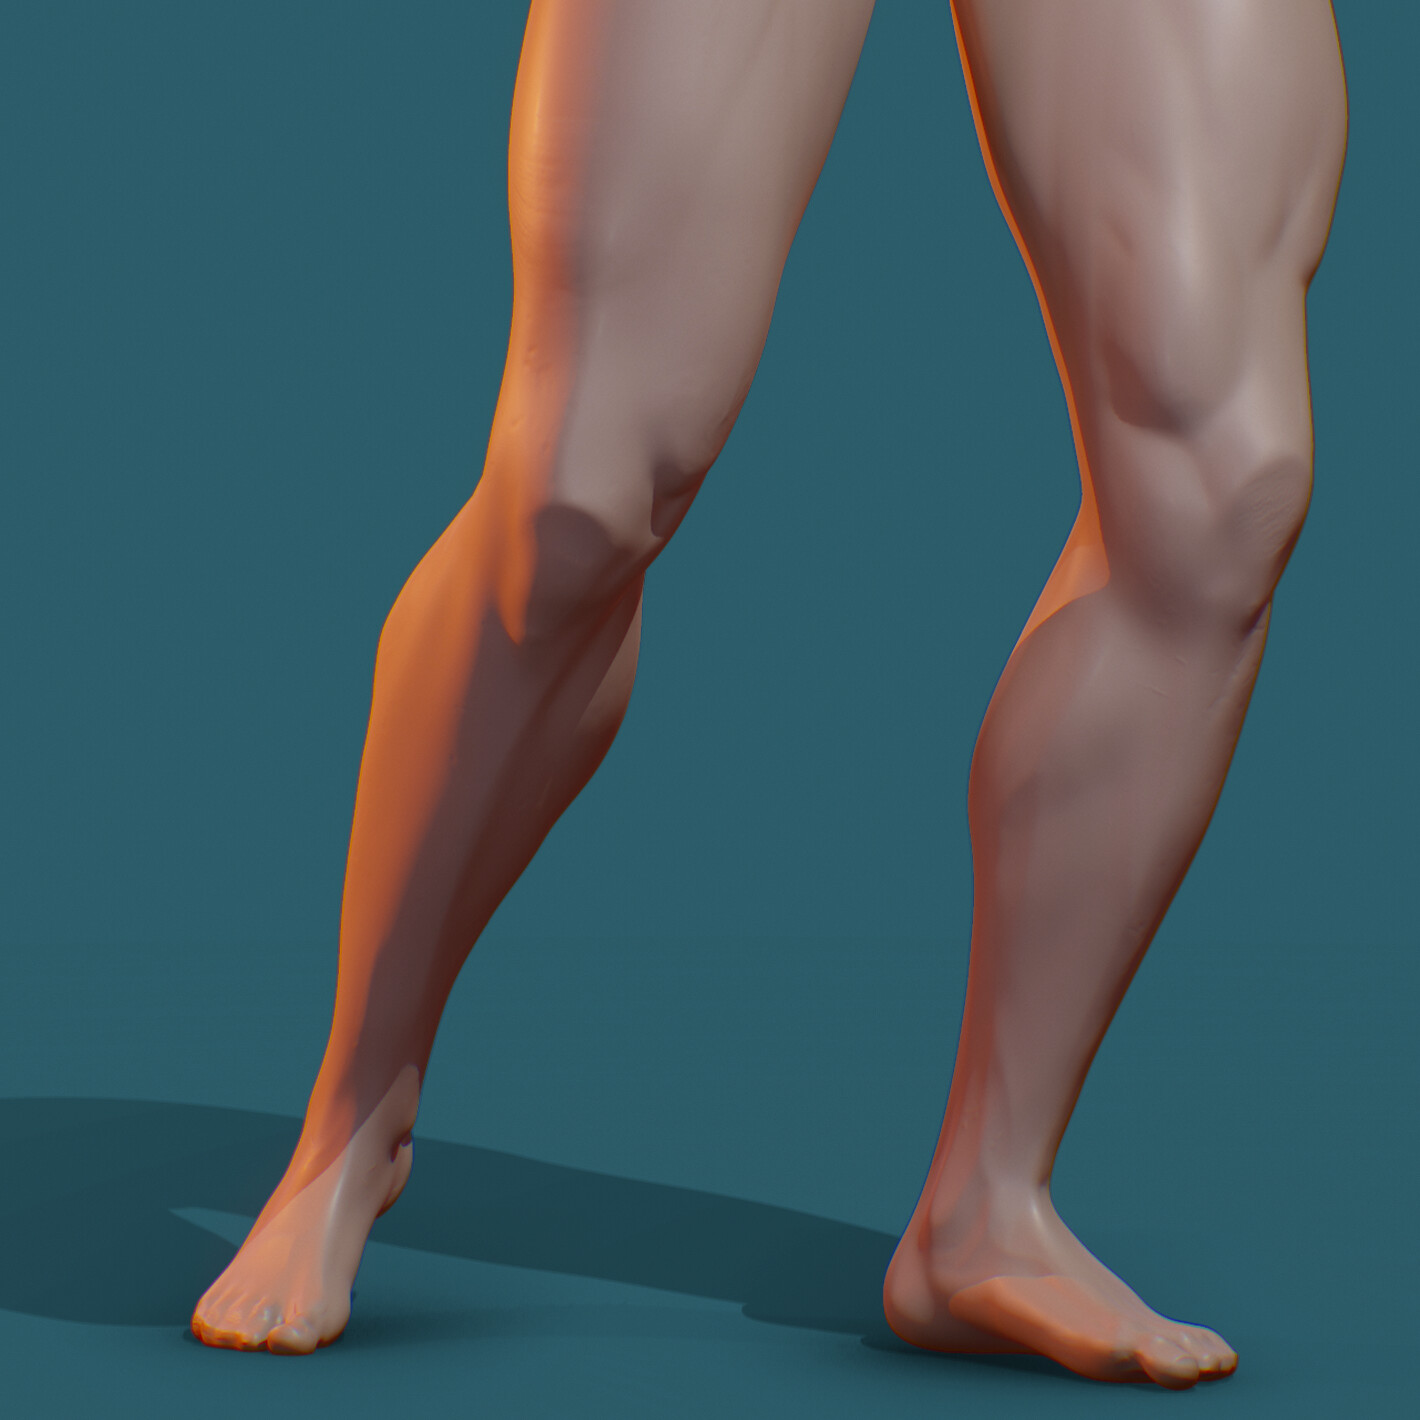 Boxer Legs Study